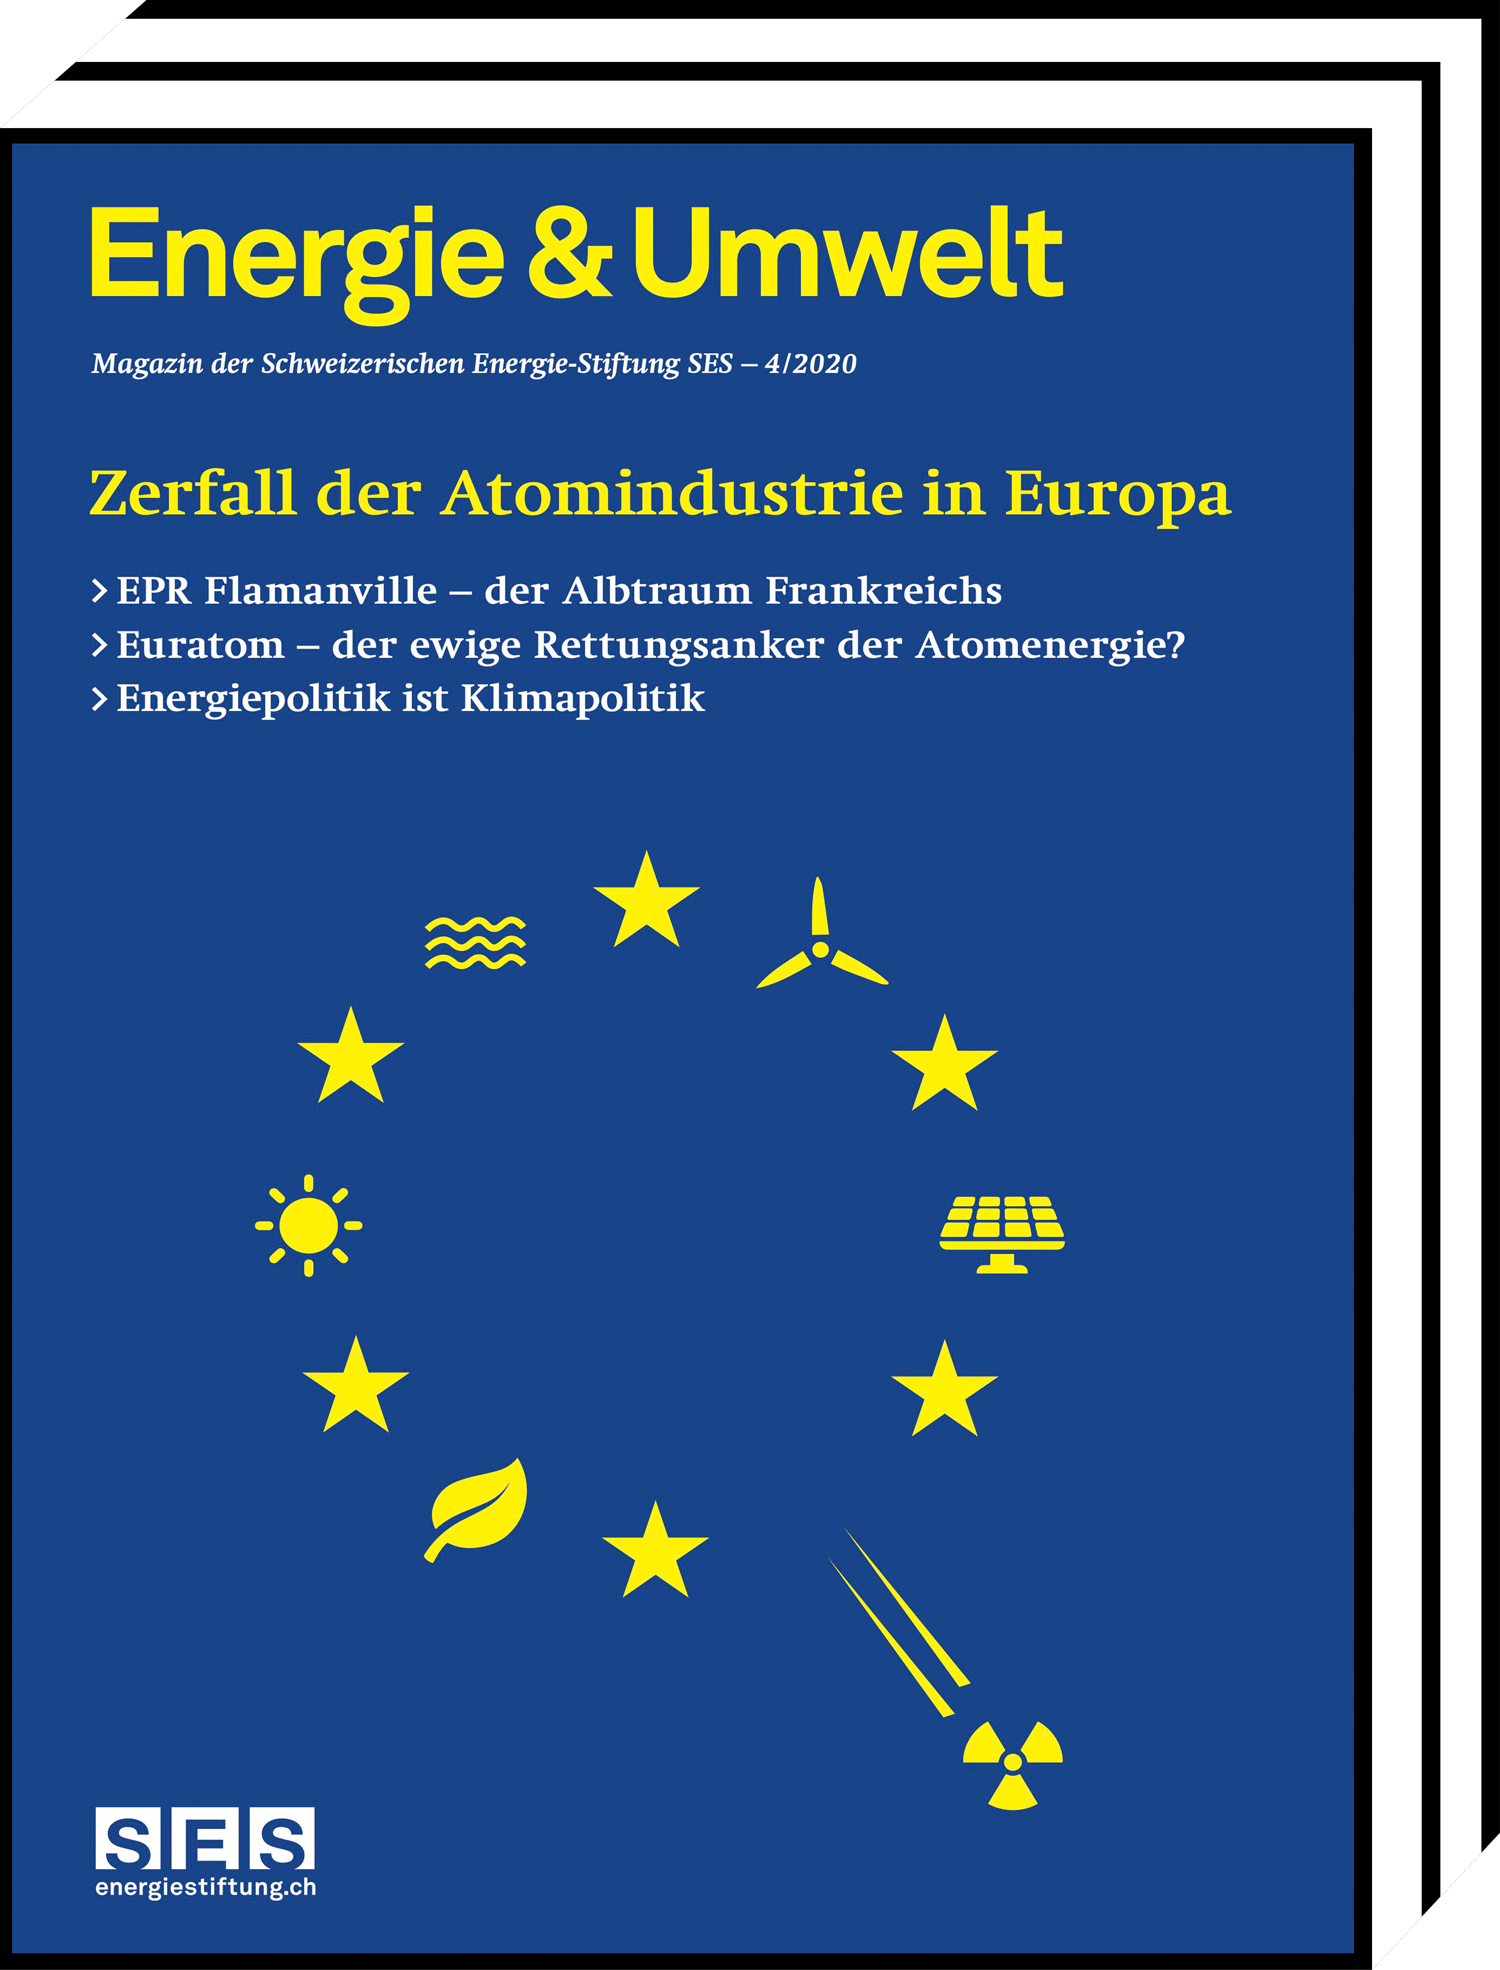 Energie&Umwelt - Zerfall der Atomindustrie in Europa